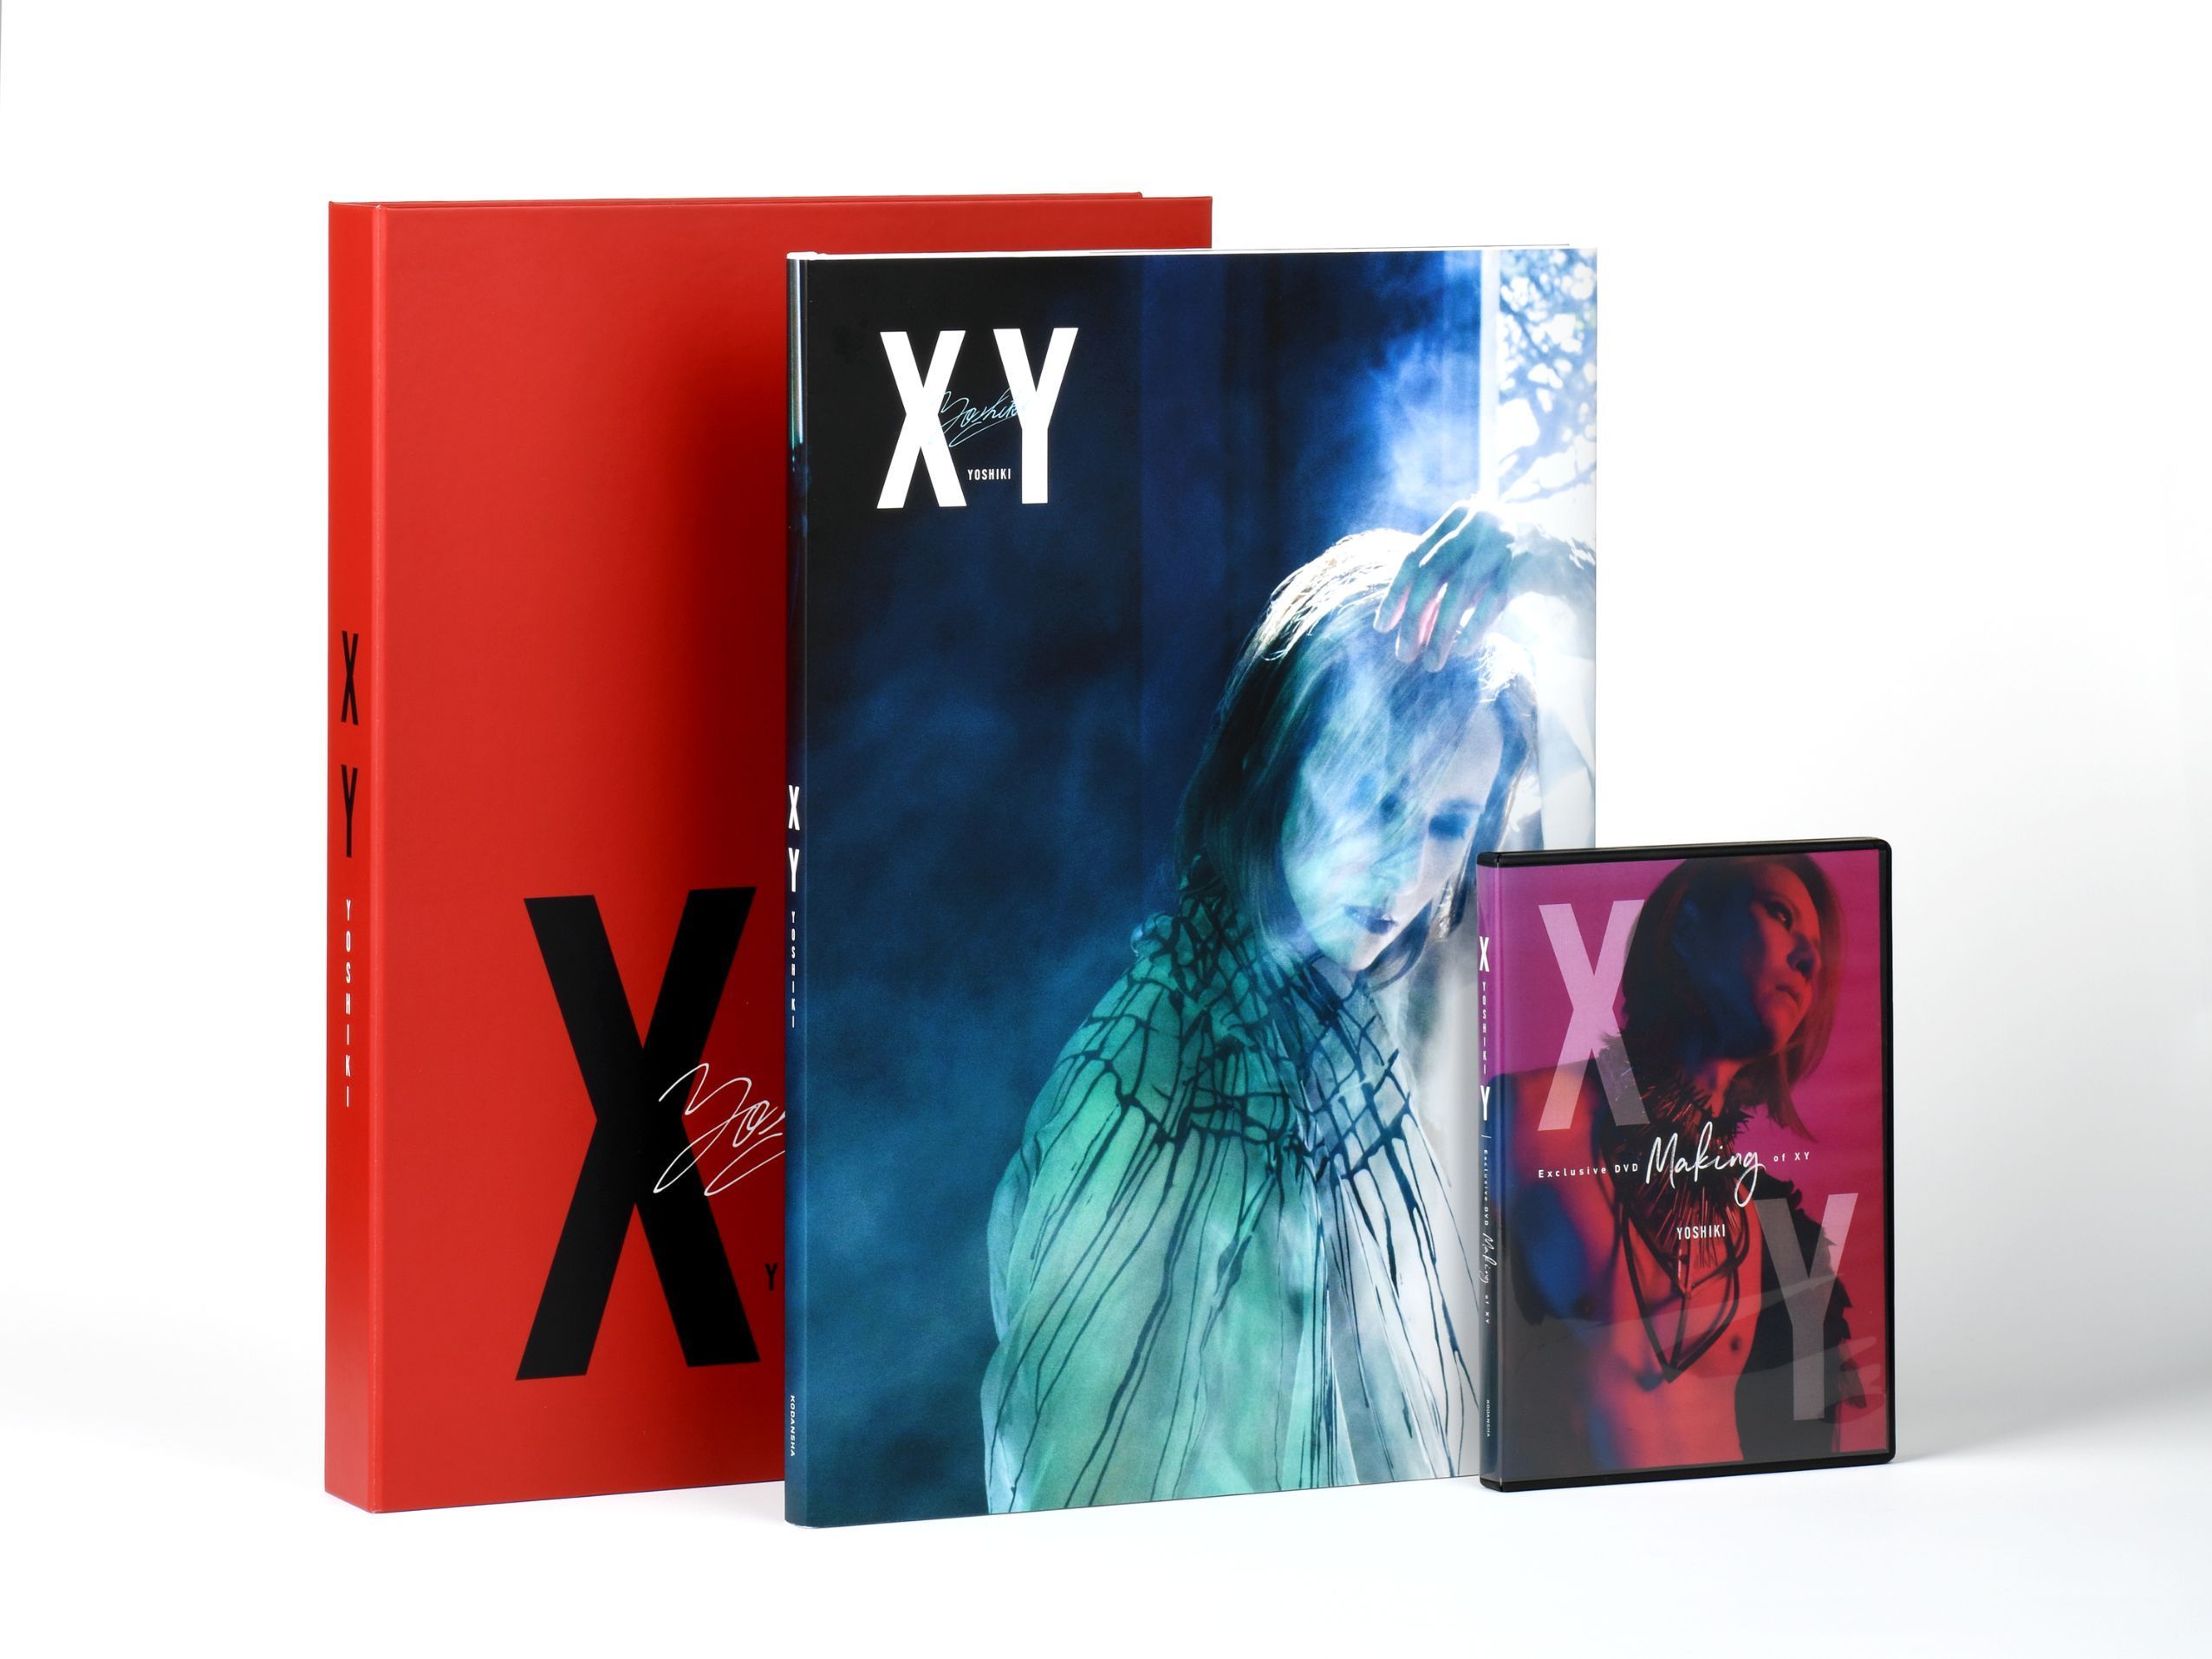 Yoshiki 販売価格10 000円の写真集 Xy が売り上げ部数で首位に オリコン週間bookランキング 写真集 部門で Spice エンタメ特化型情報メディア スパイス